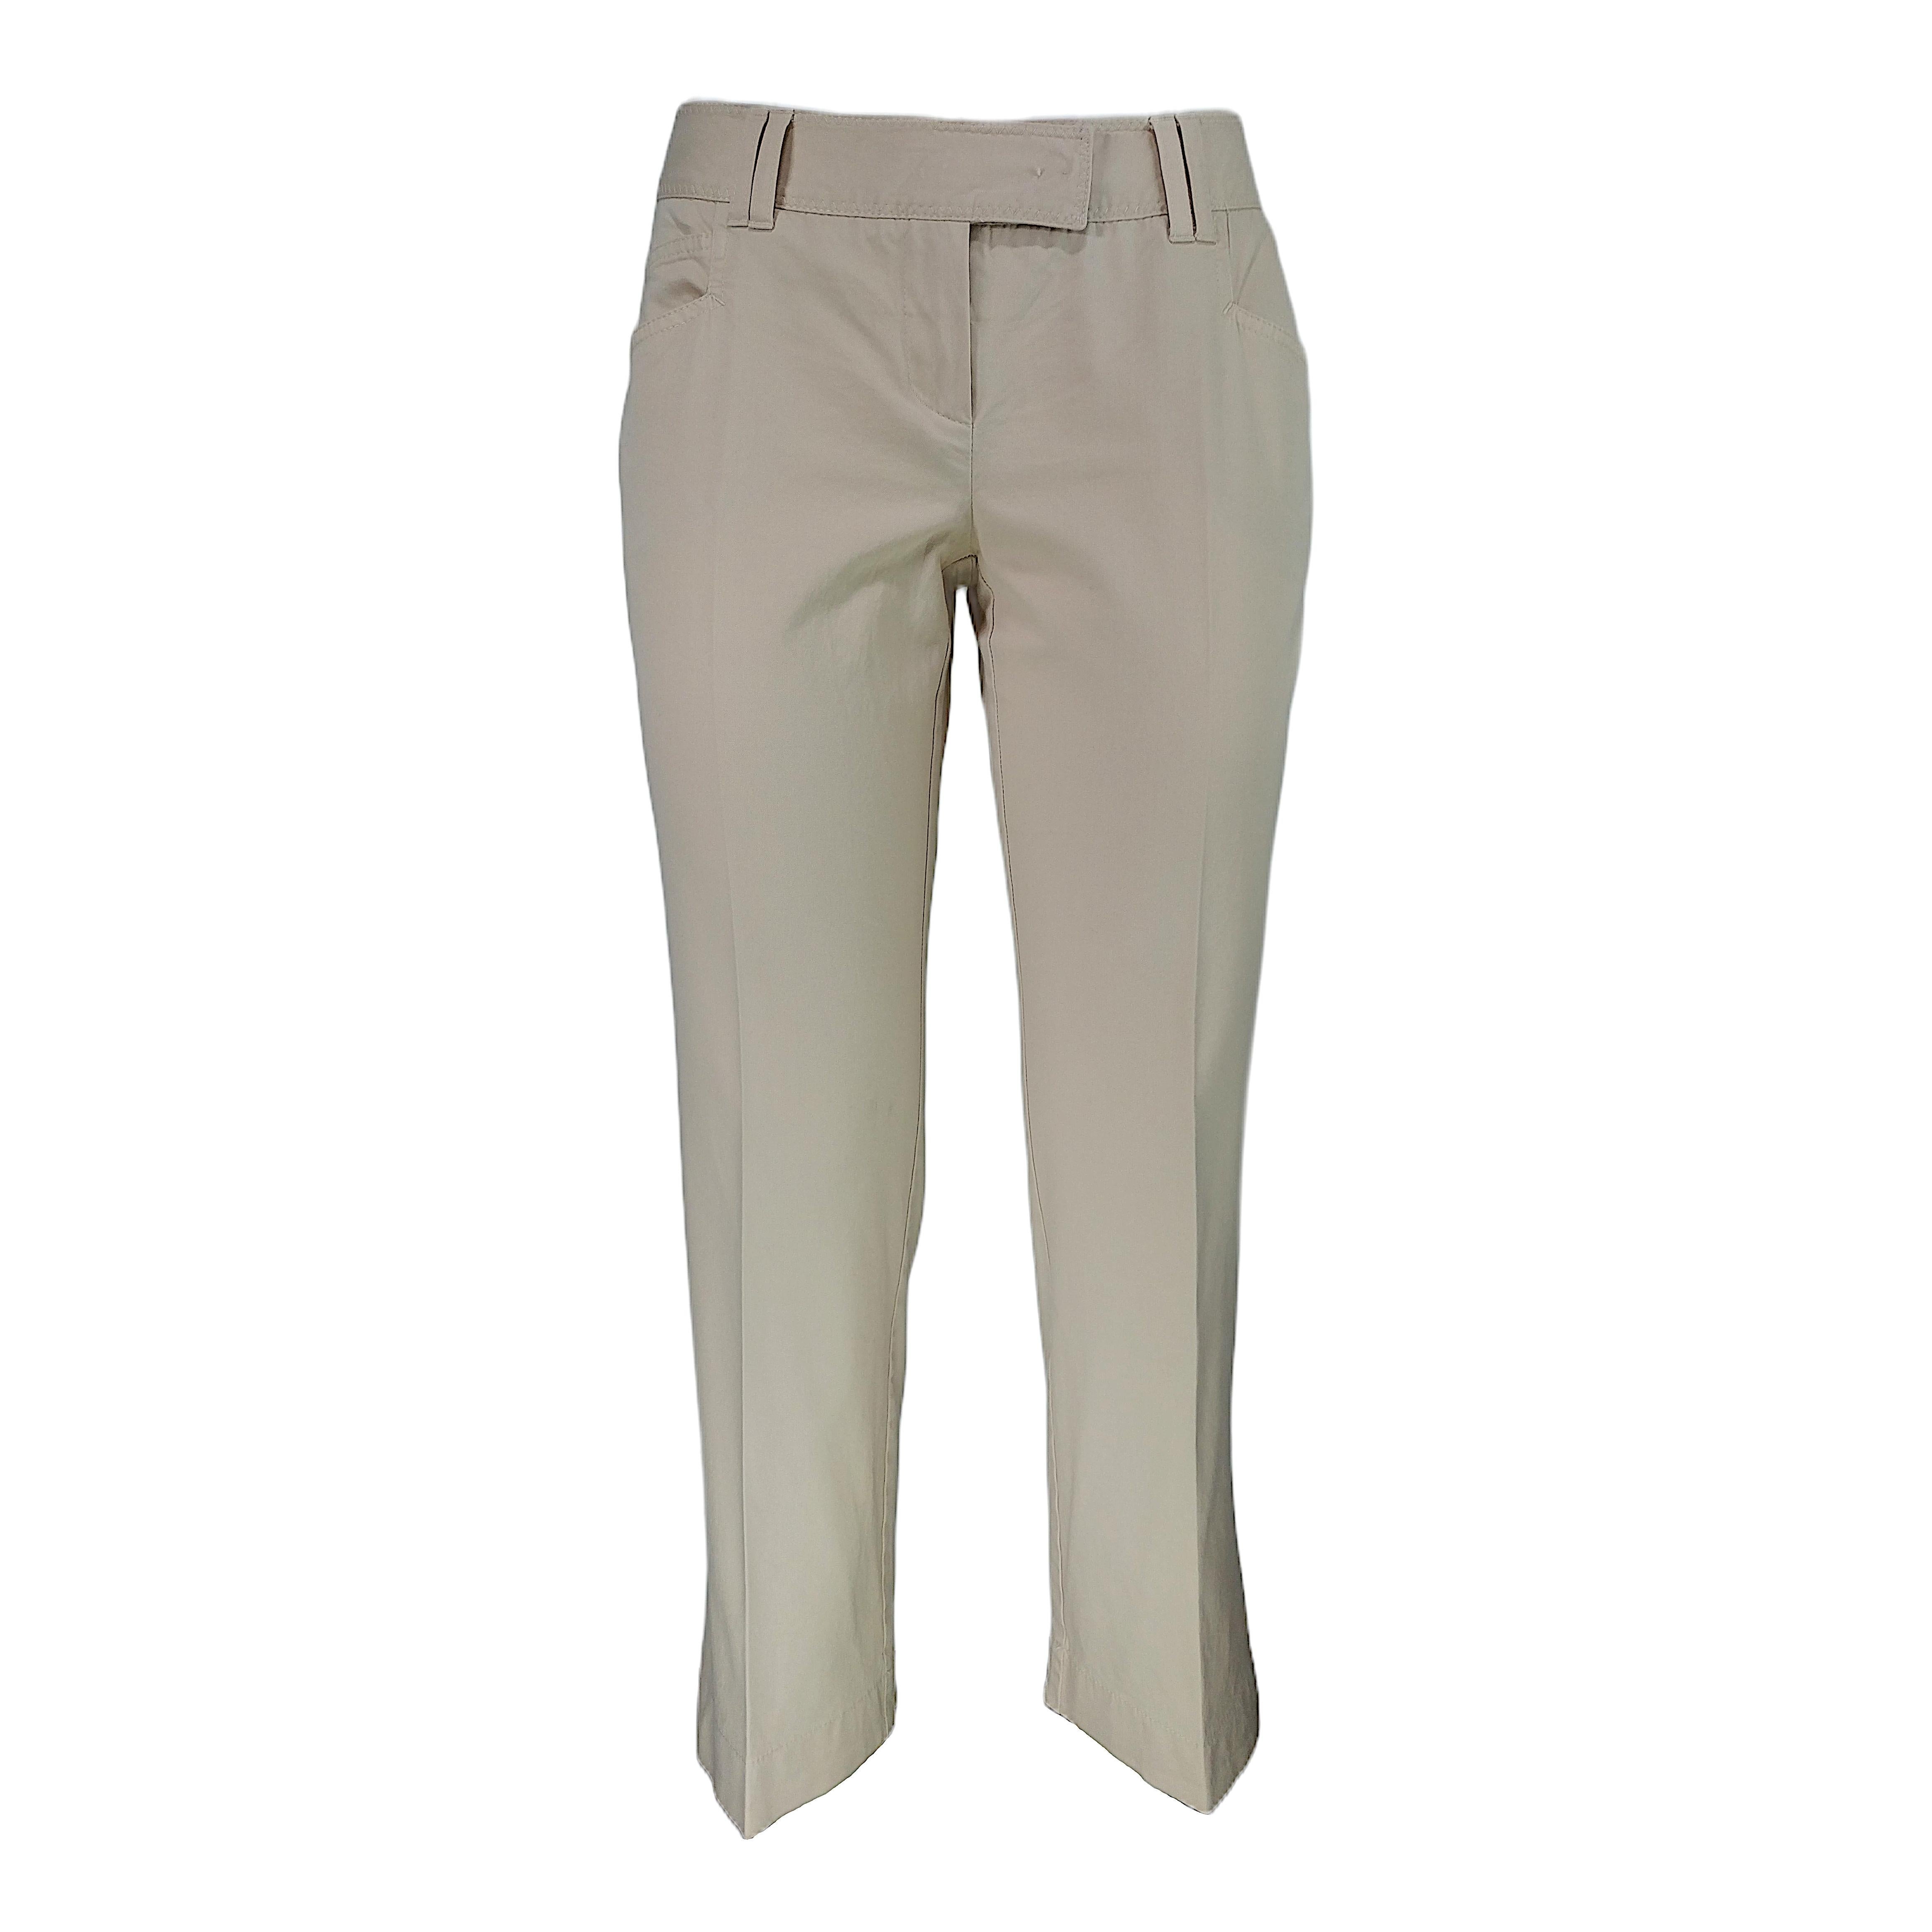 CHRISTIAN DIOR - Vintage Beige Cotton Capri 7/8 Pants | Size 6US 38EU